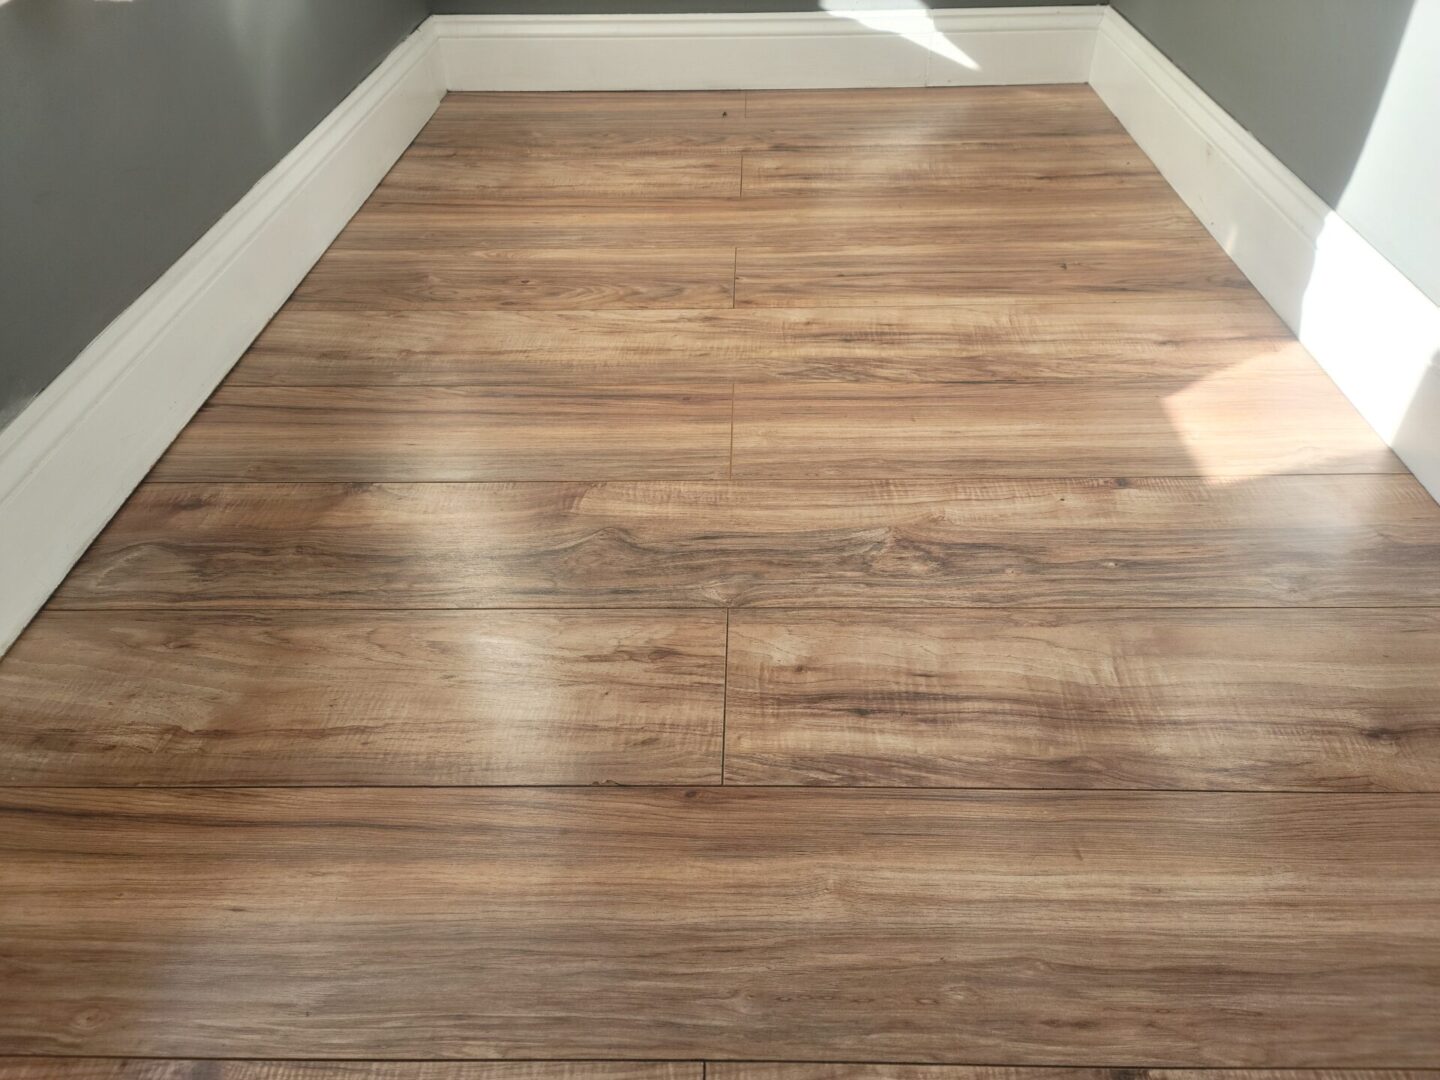 The wooden floor of an empty room